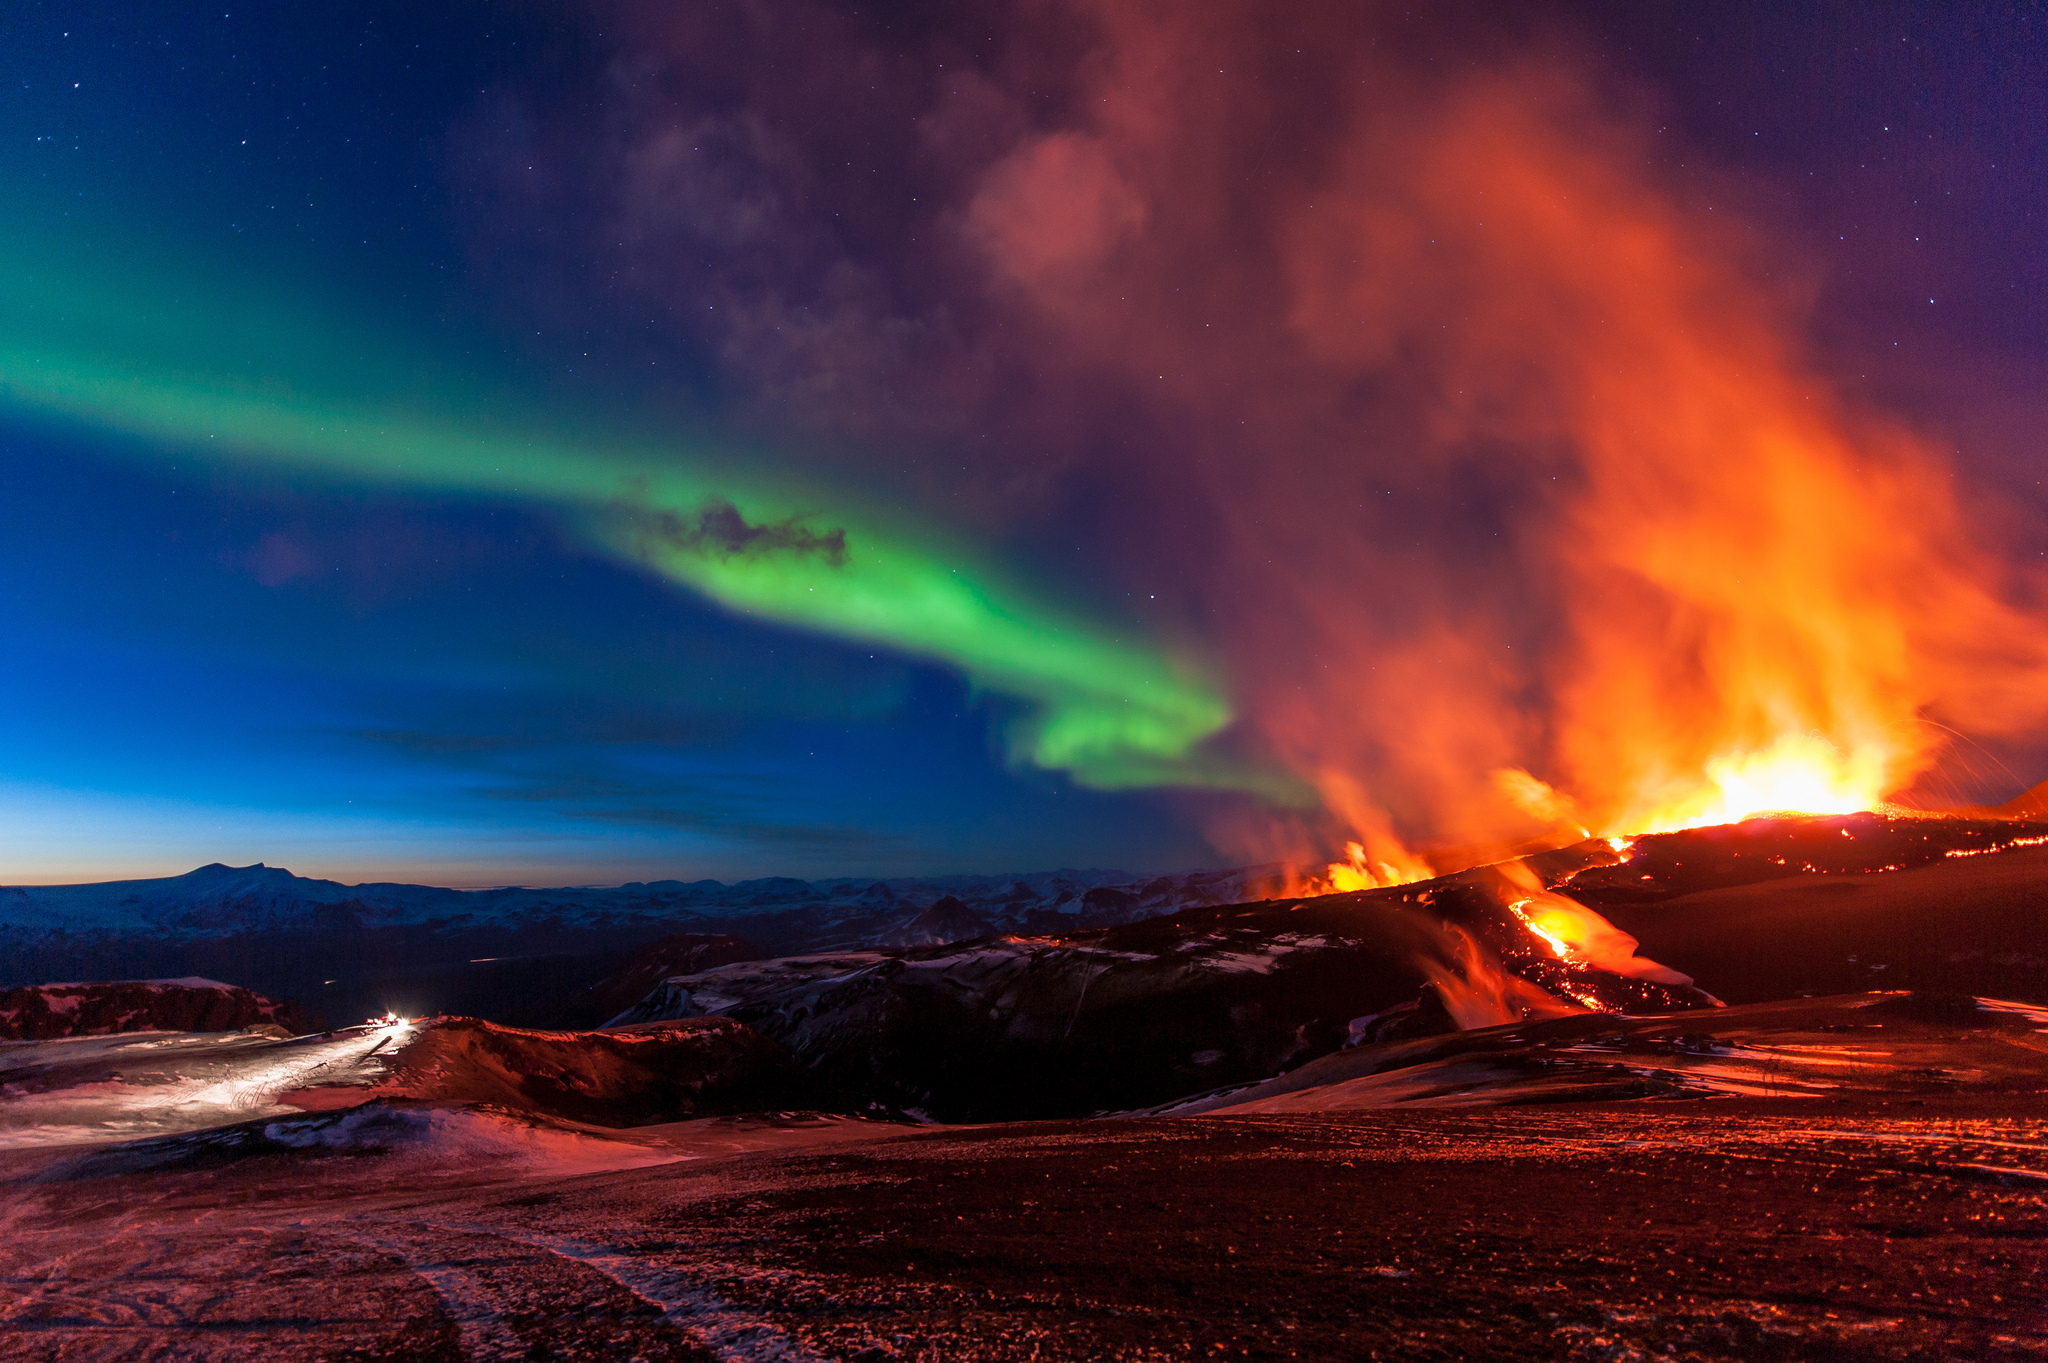 vulkantapete,himmel,natur,aurora,atmosphäre,arten von vulkanausbrüchen